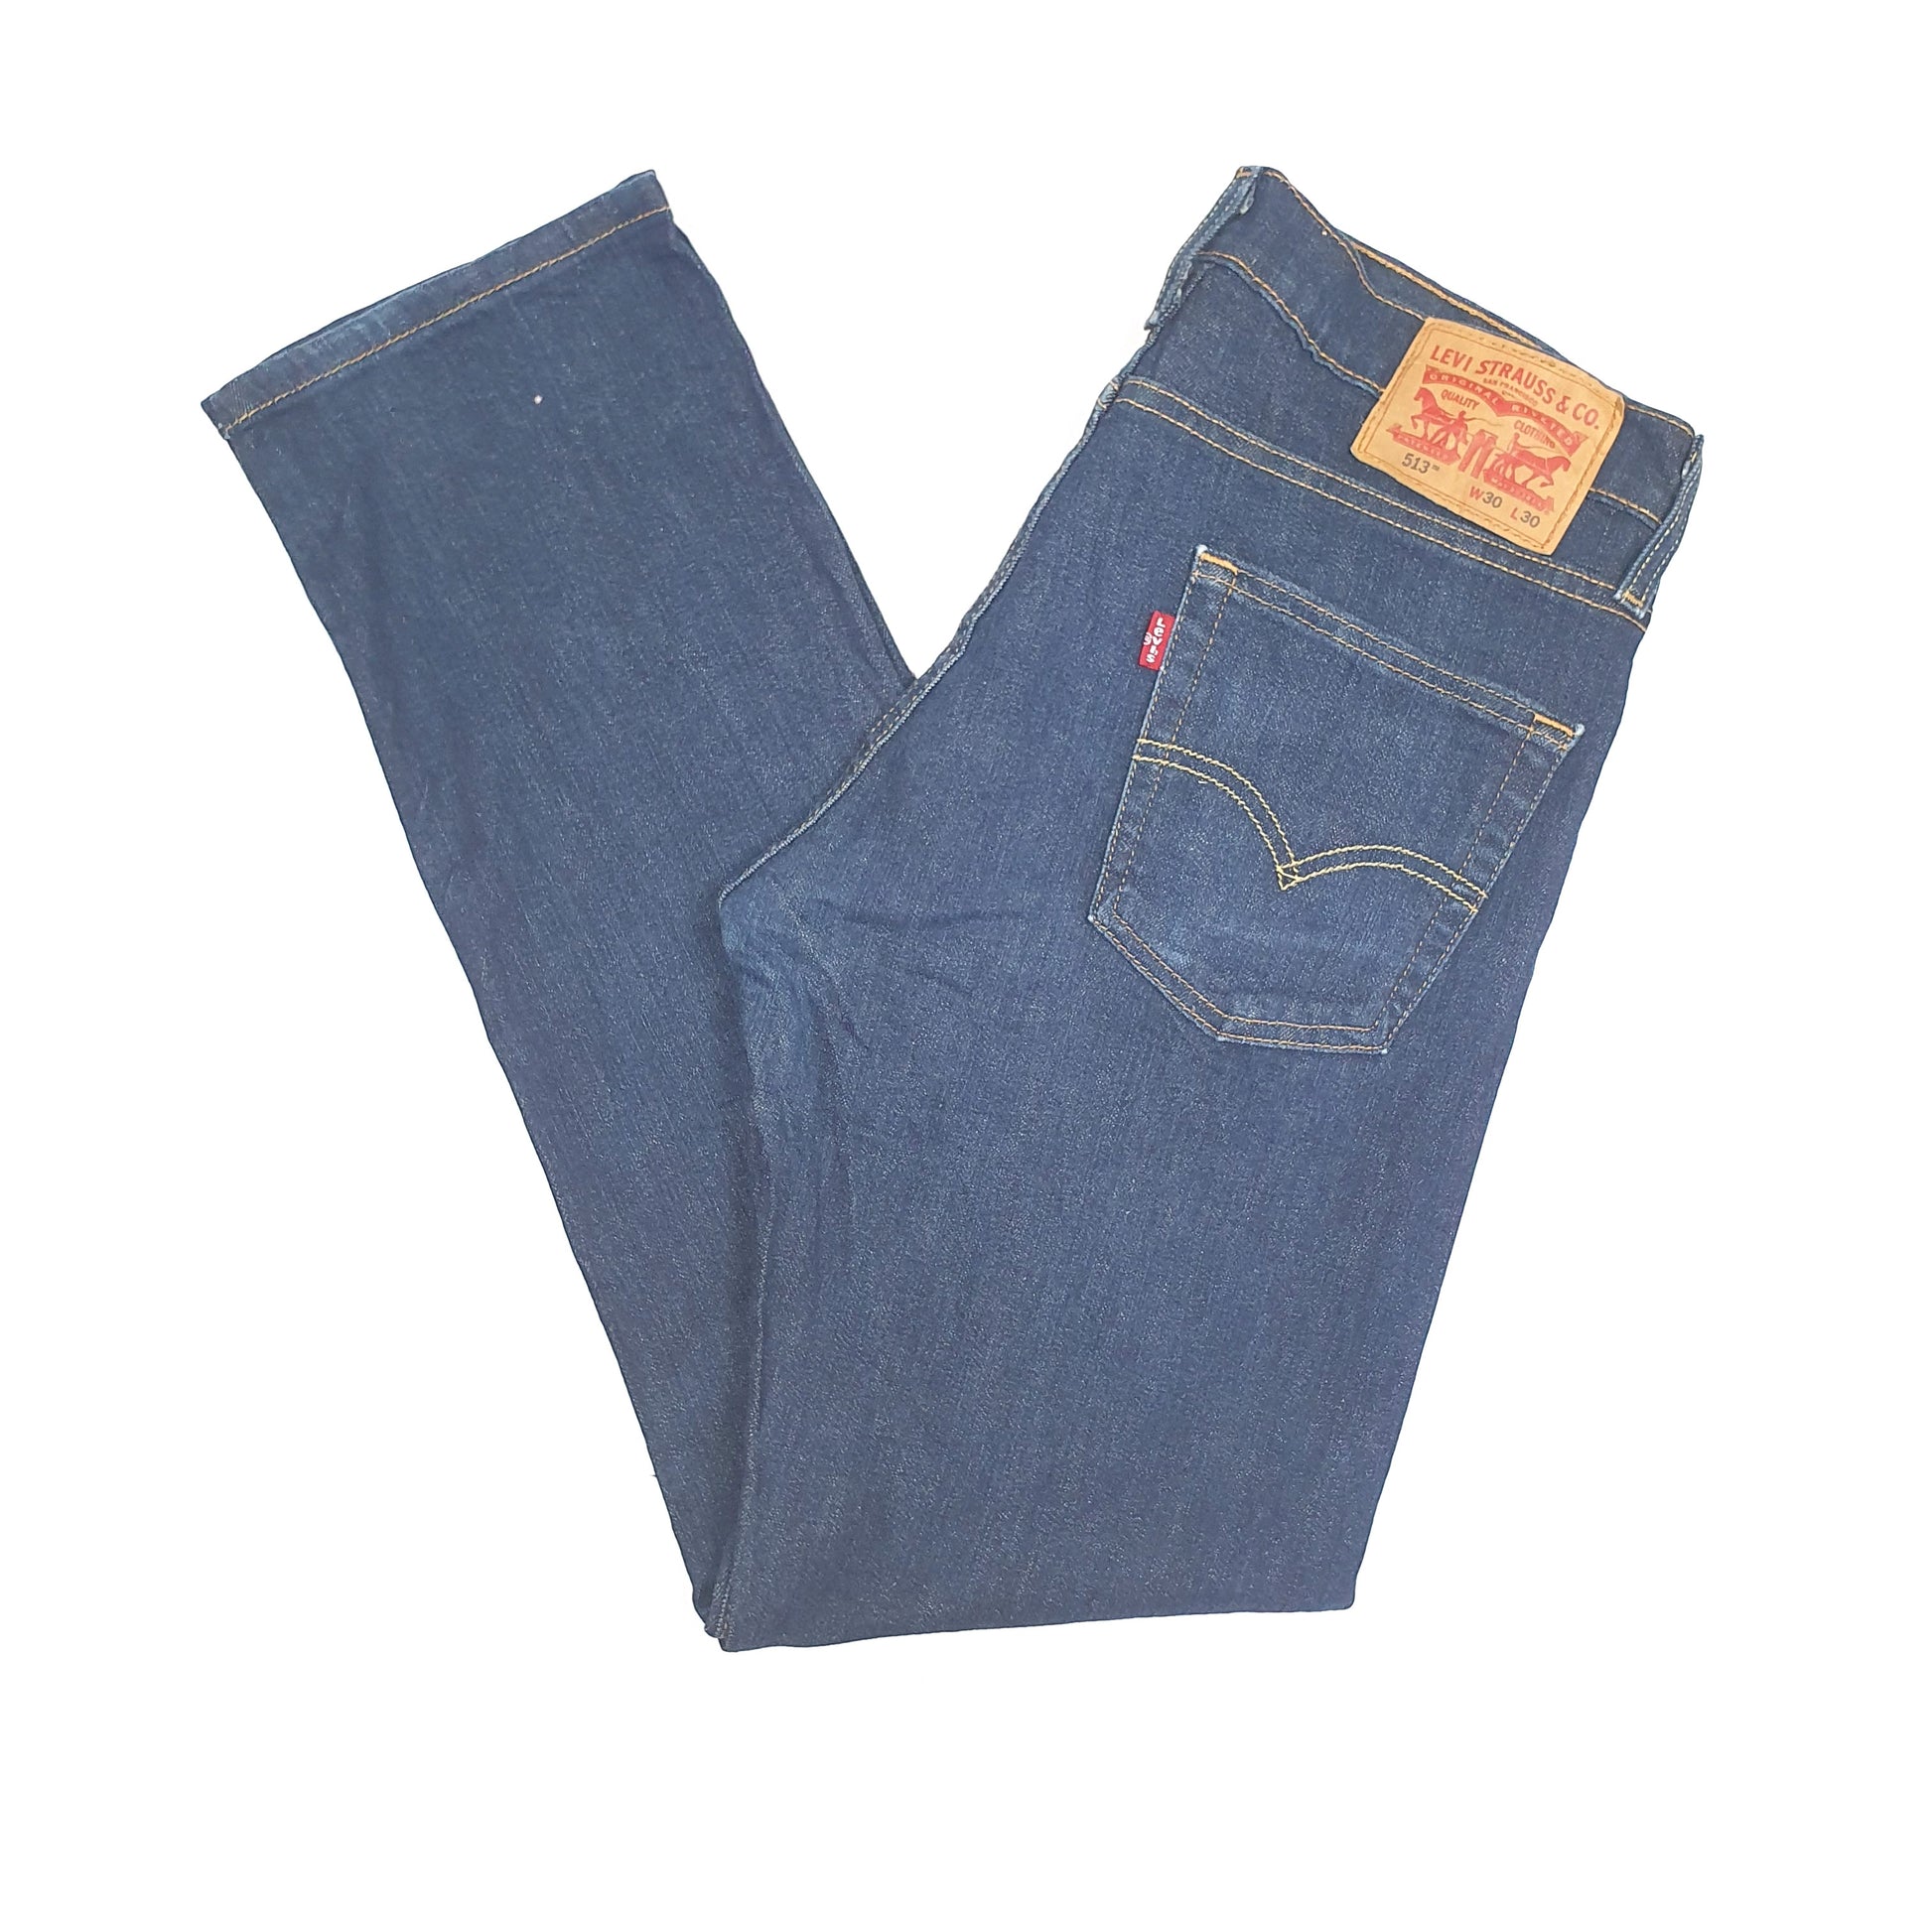 Blue Levis 513 Jeans